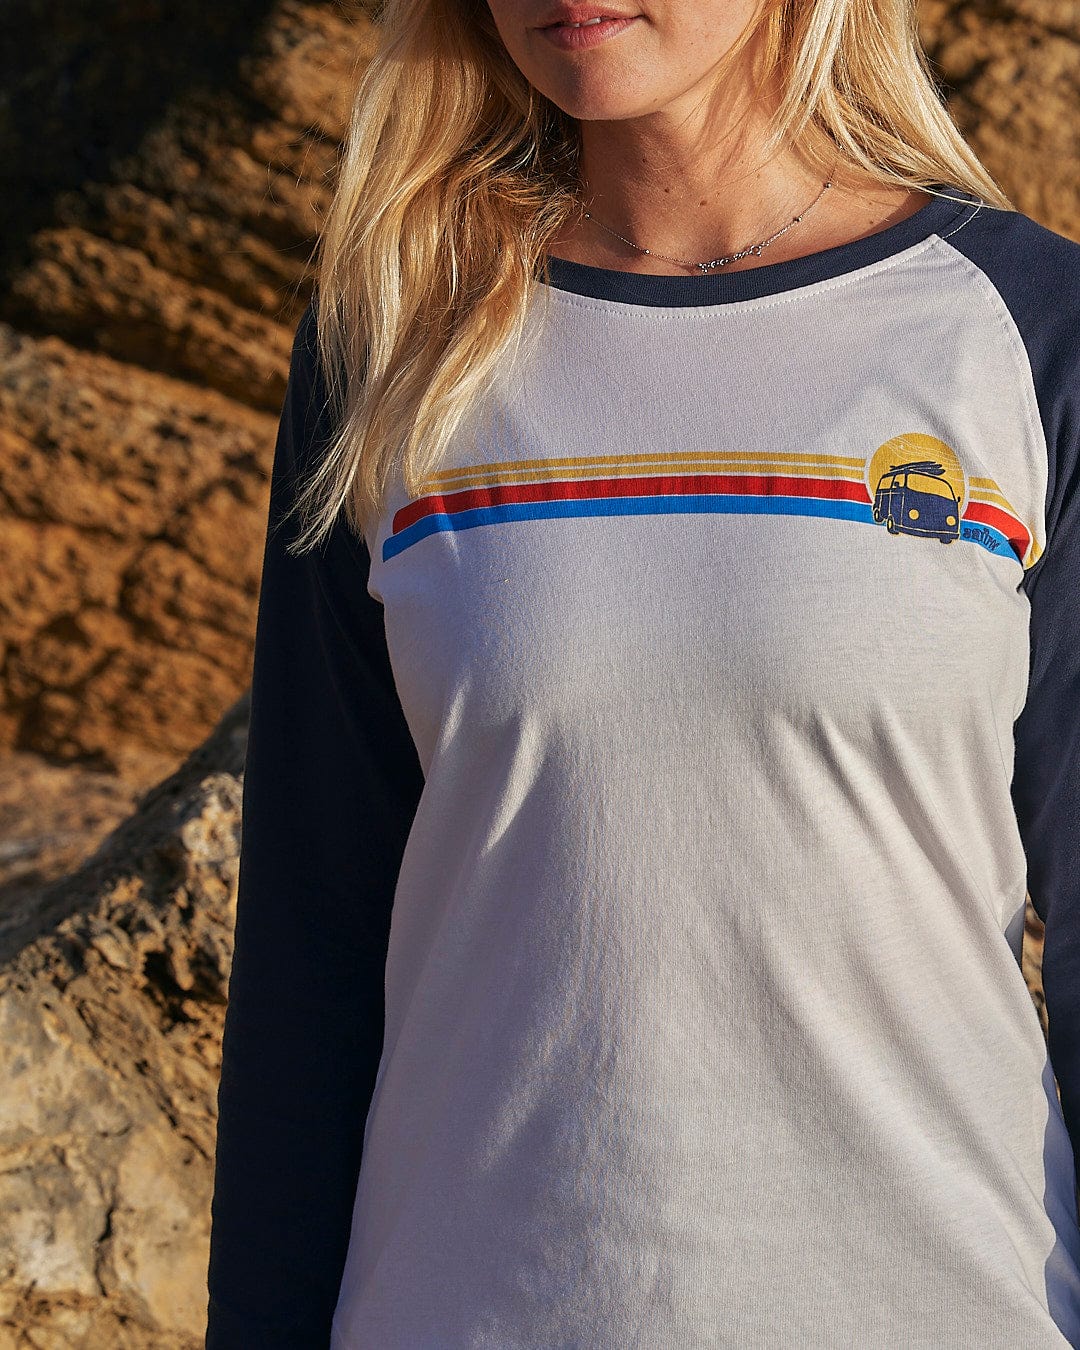 A woman wearing a Saltrock Celeste Stripe - Womens Long Sleeve Raglan T-Shirt in front of a rock.